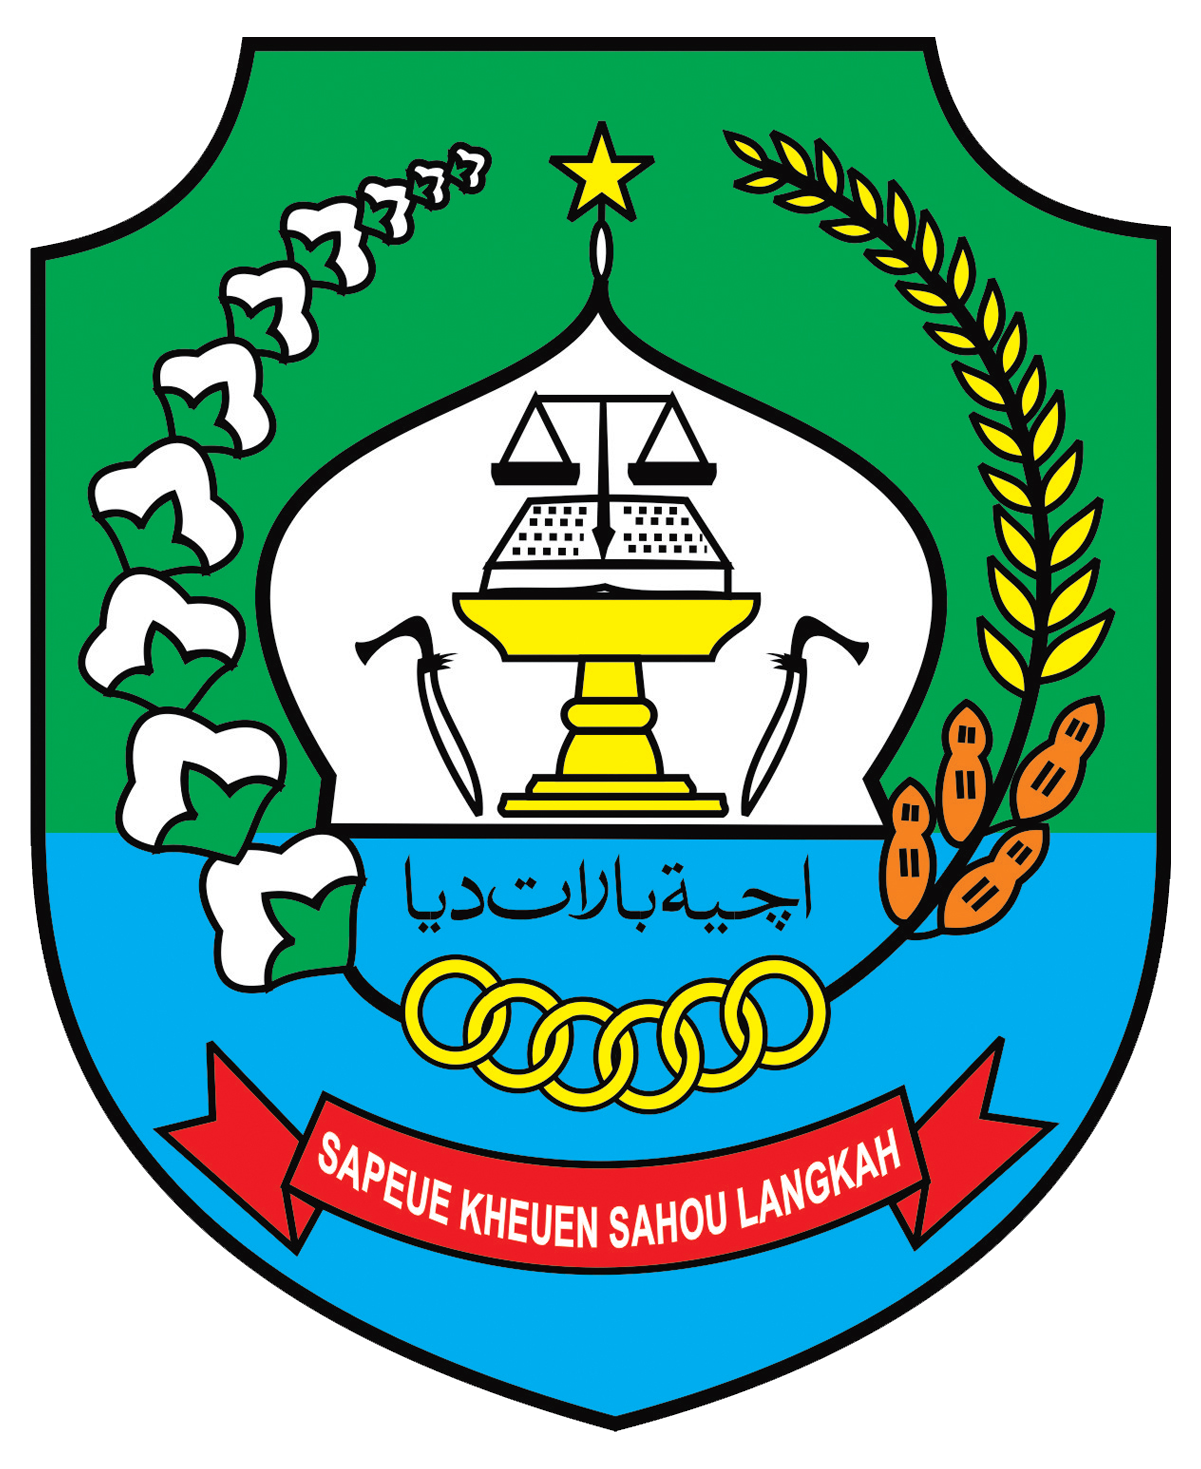 Makna Arti Logo Lambang Daerah Kabupaten Aceh Barat Daya